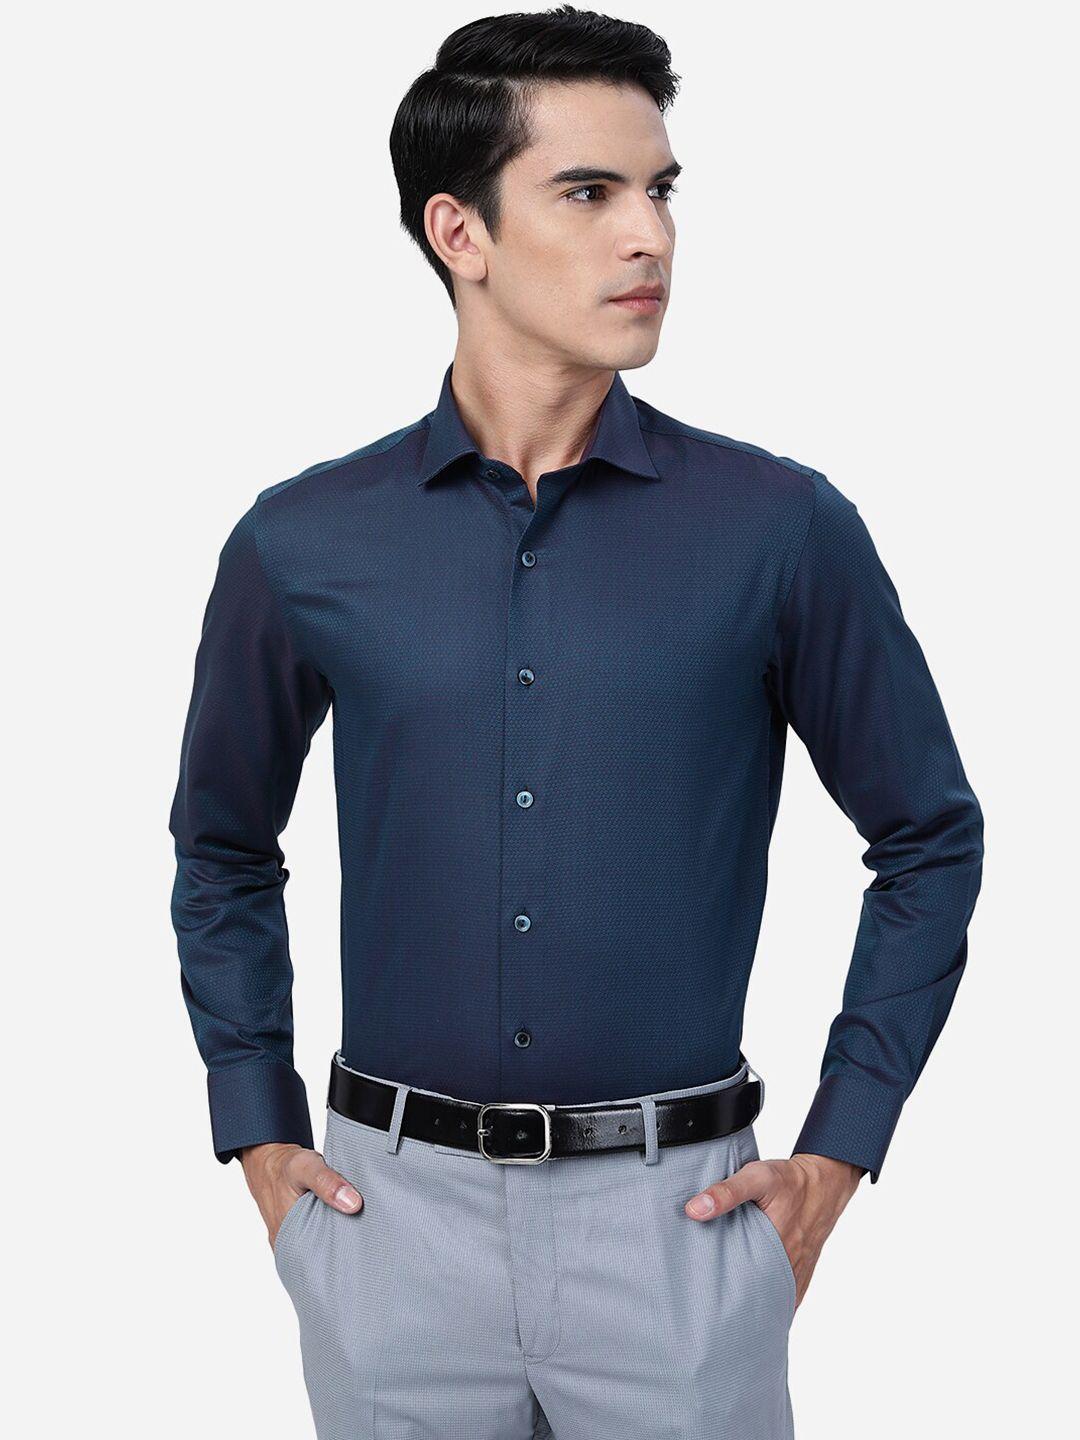 wyre slim fit self design textured cotton shirt